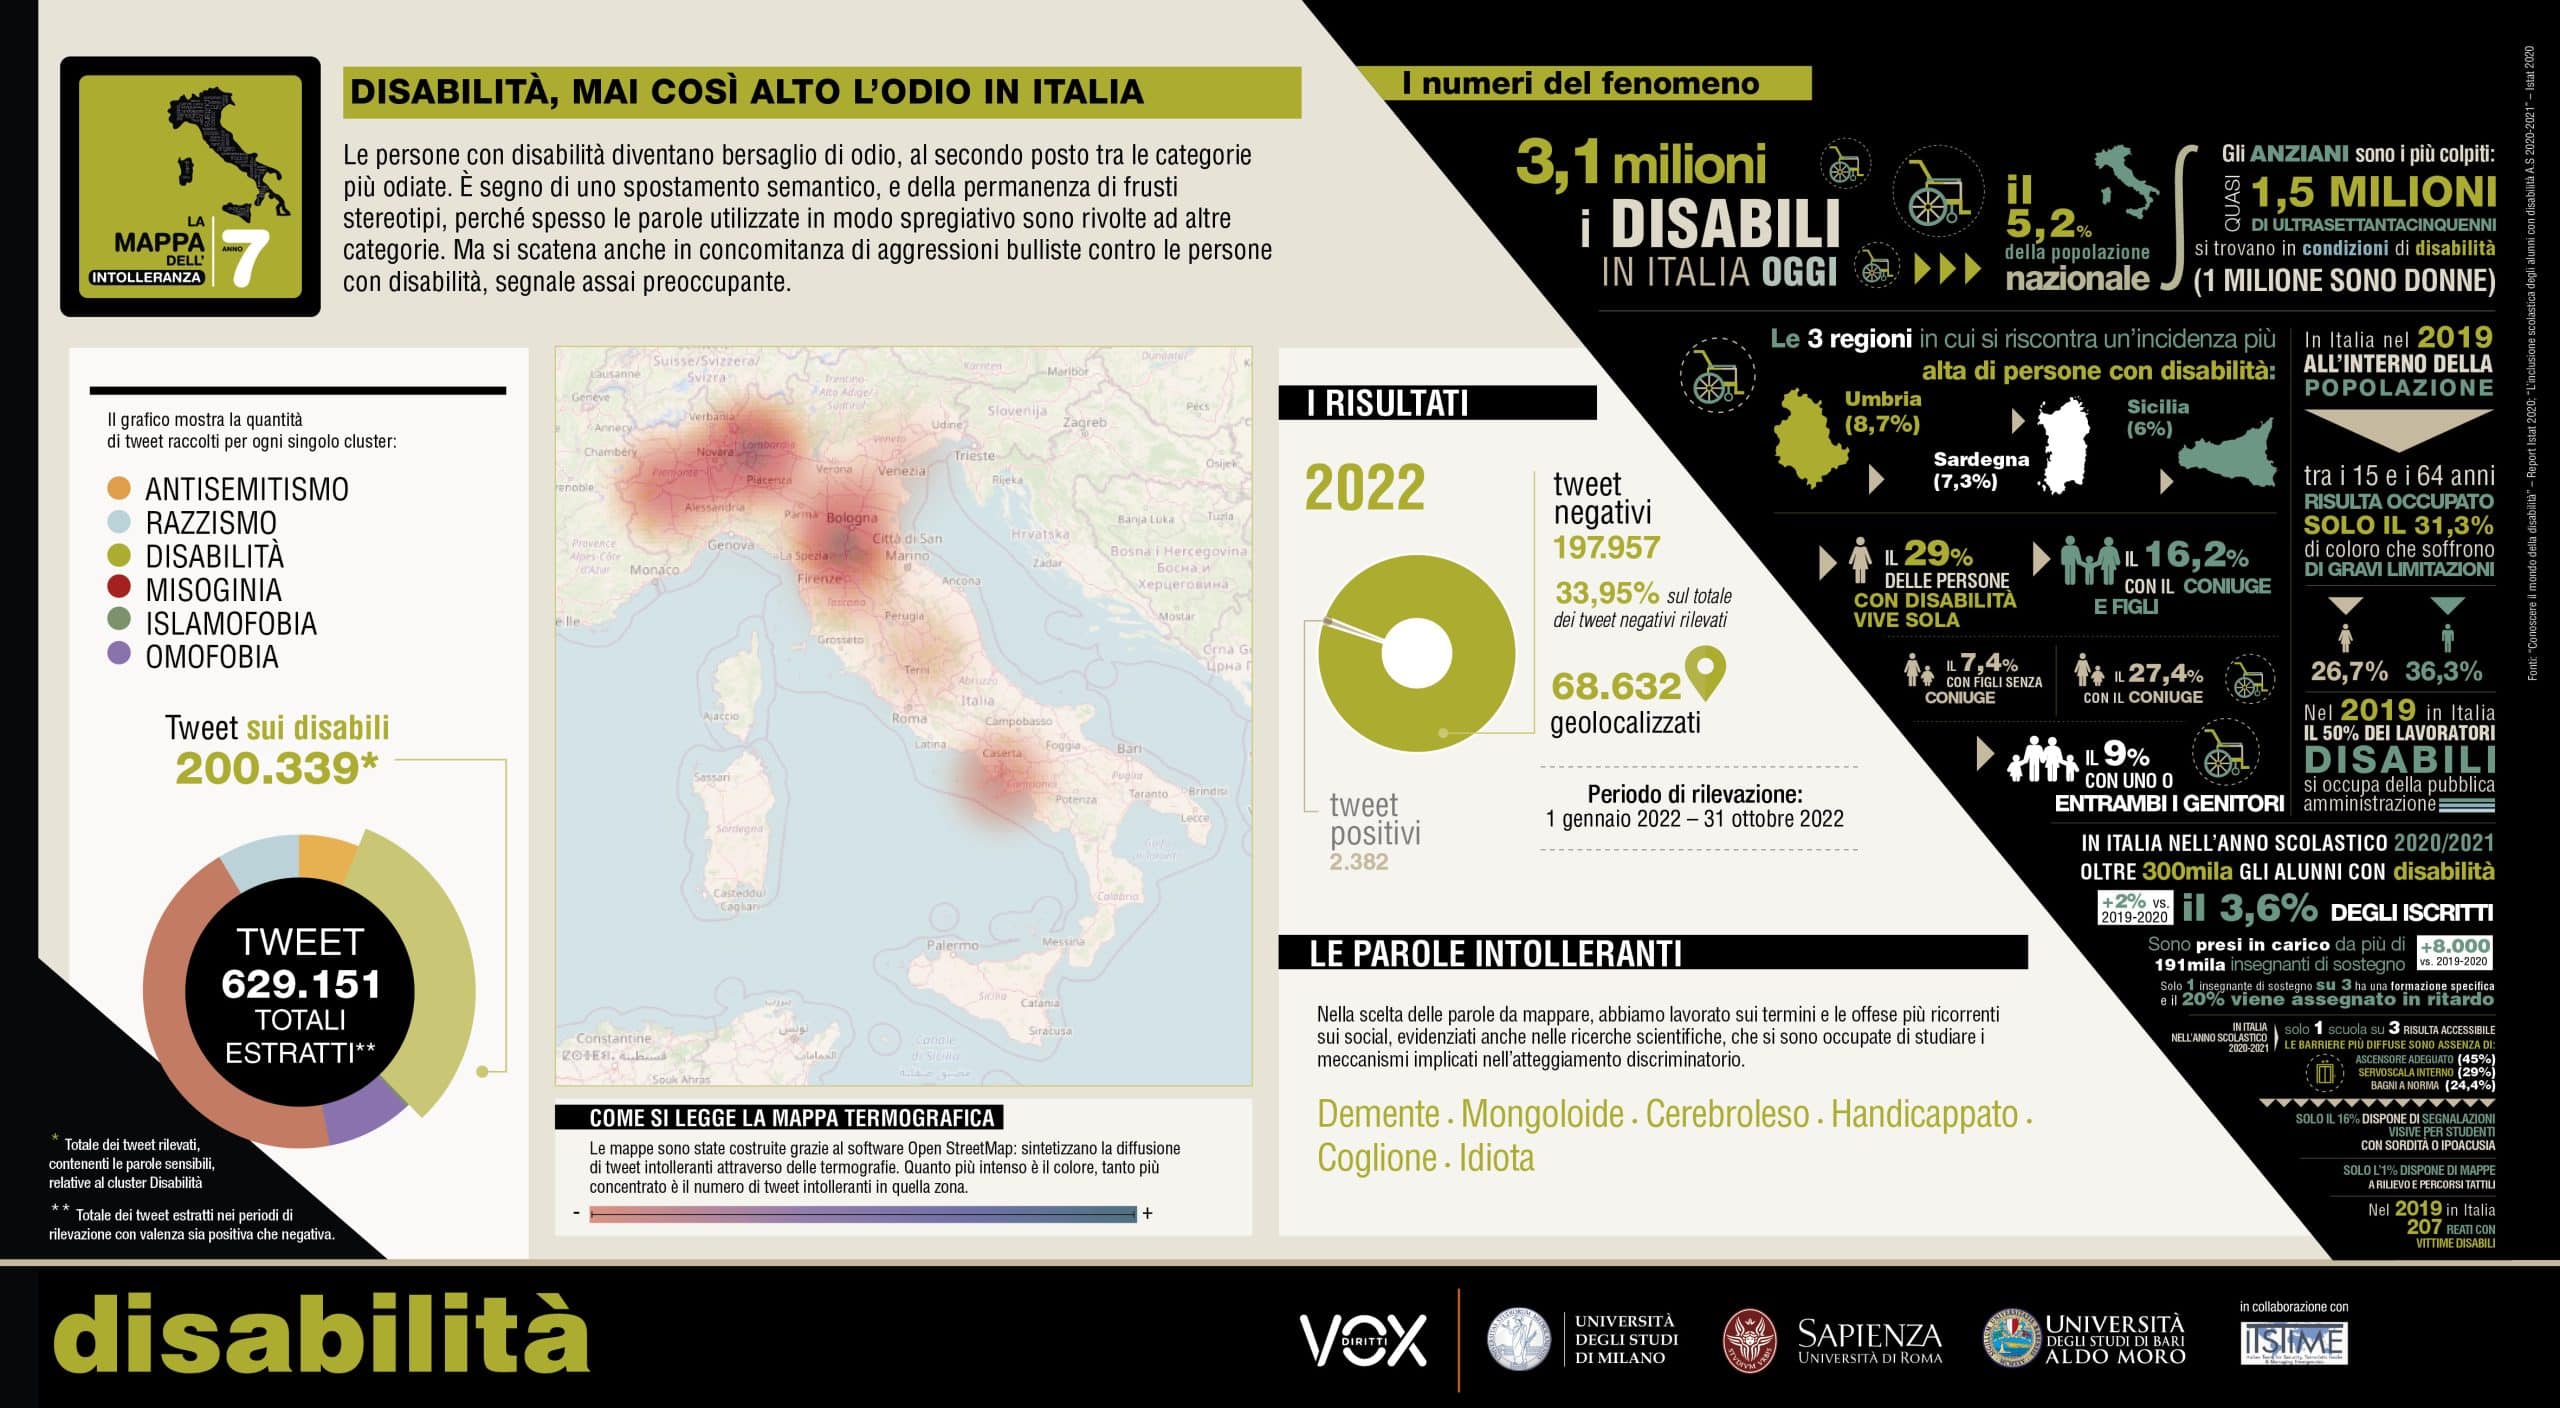 La mappa di Vox relativa all'odio nei confronti delle persone con disabilità